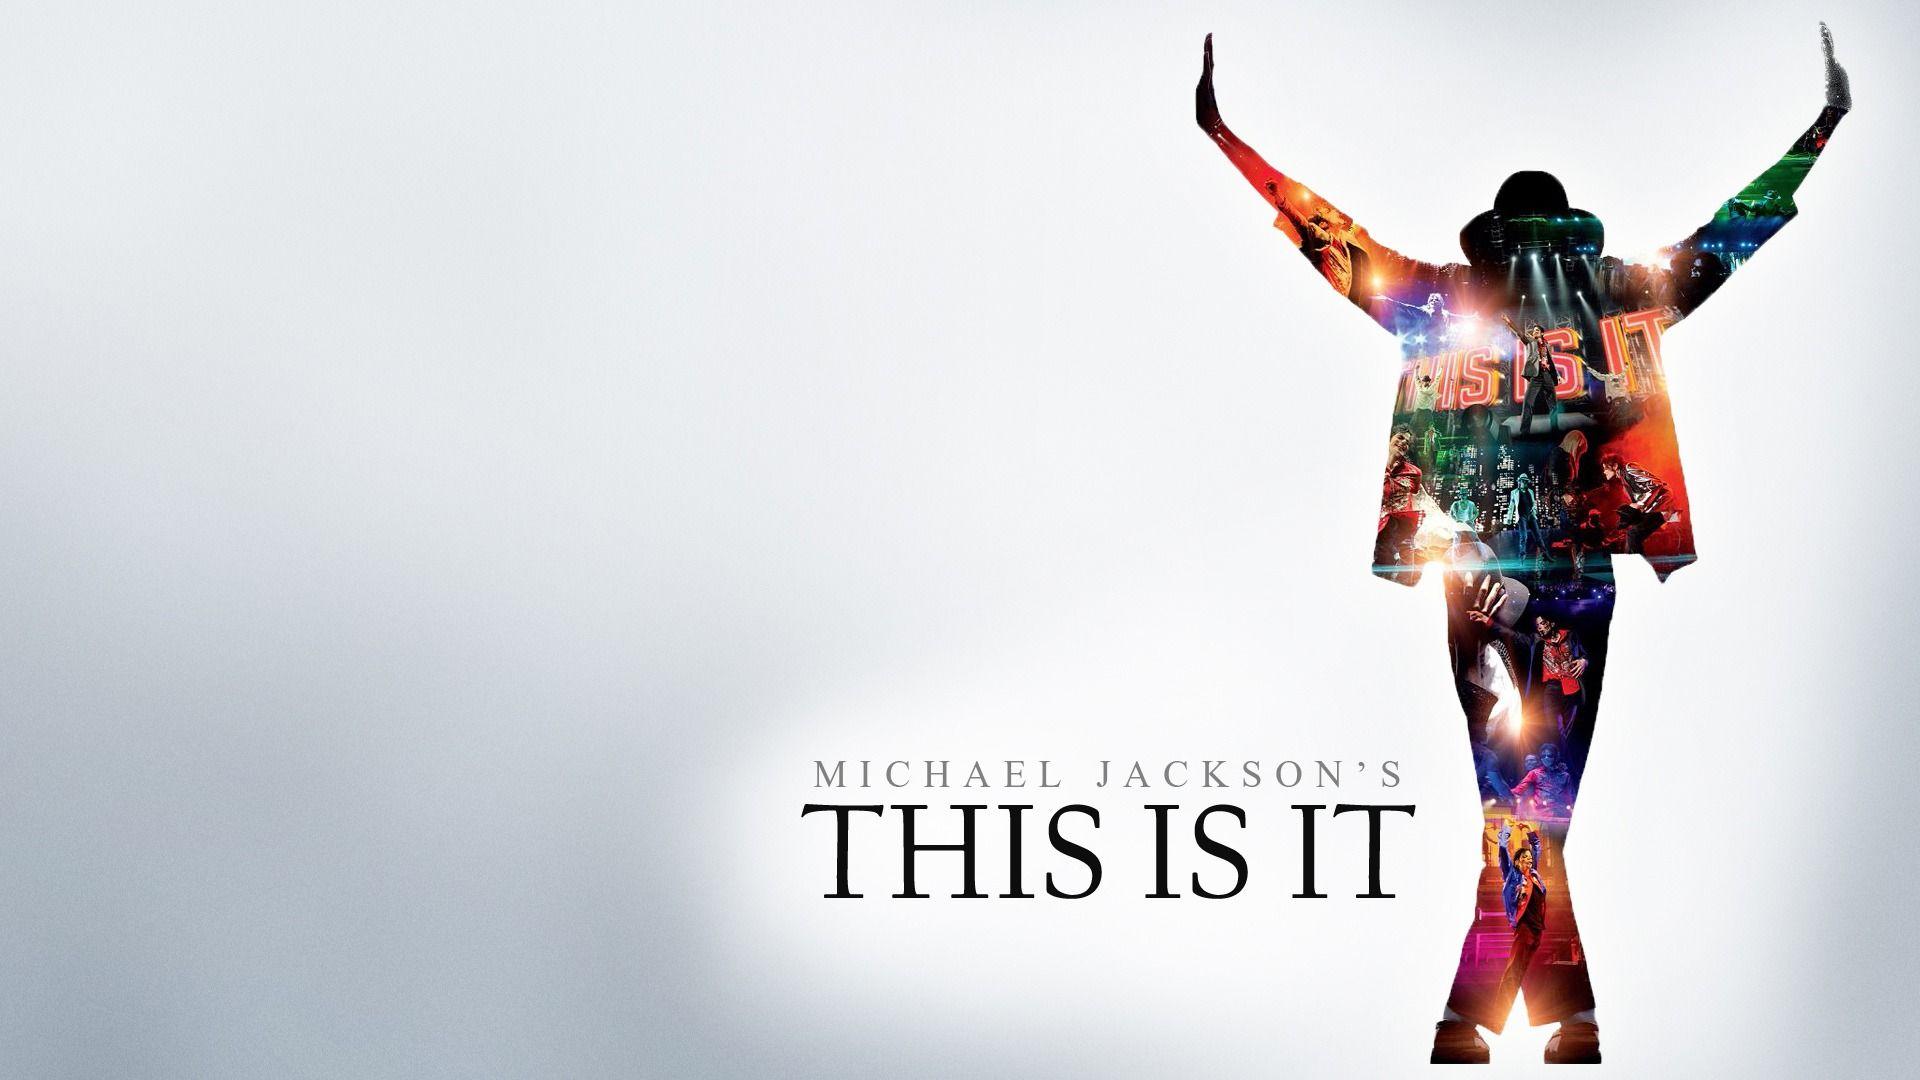 Michael Jackson Wallpaper HD Free Download. Michael Jackson